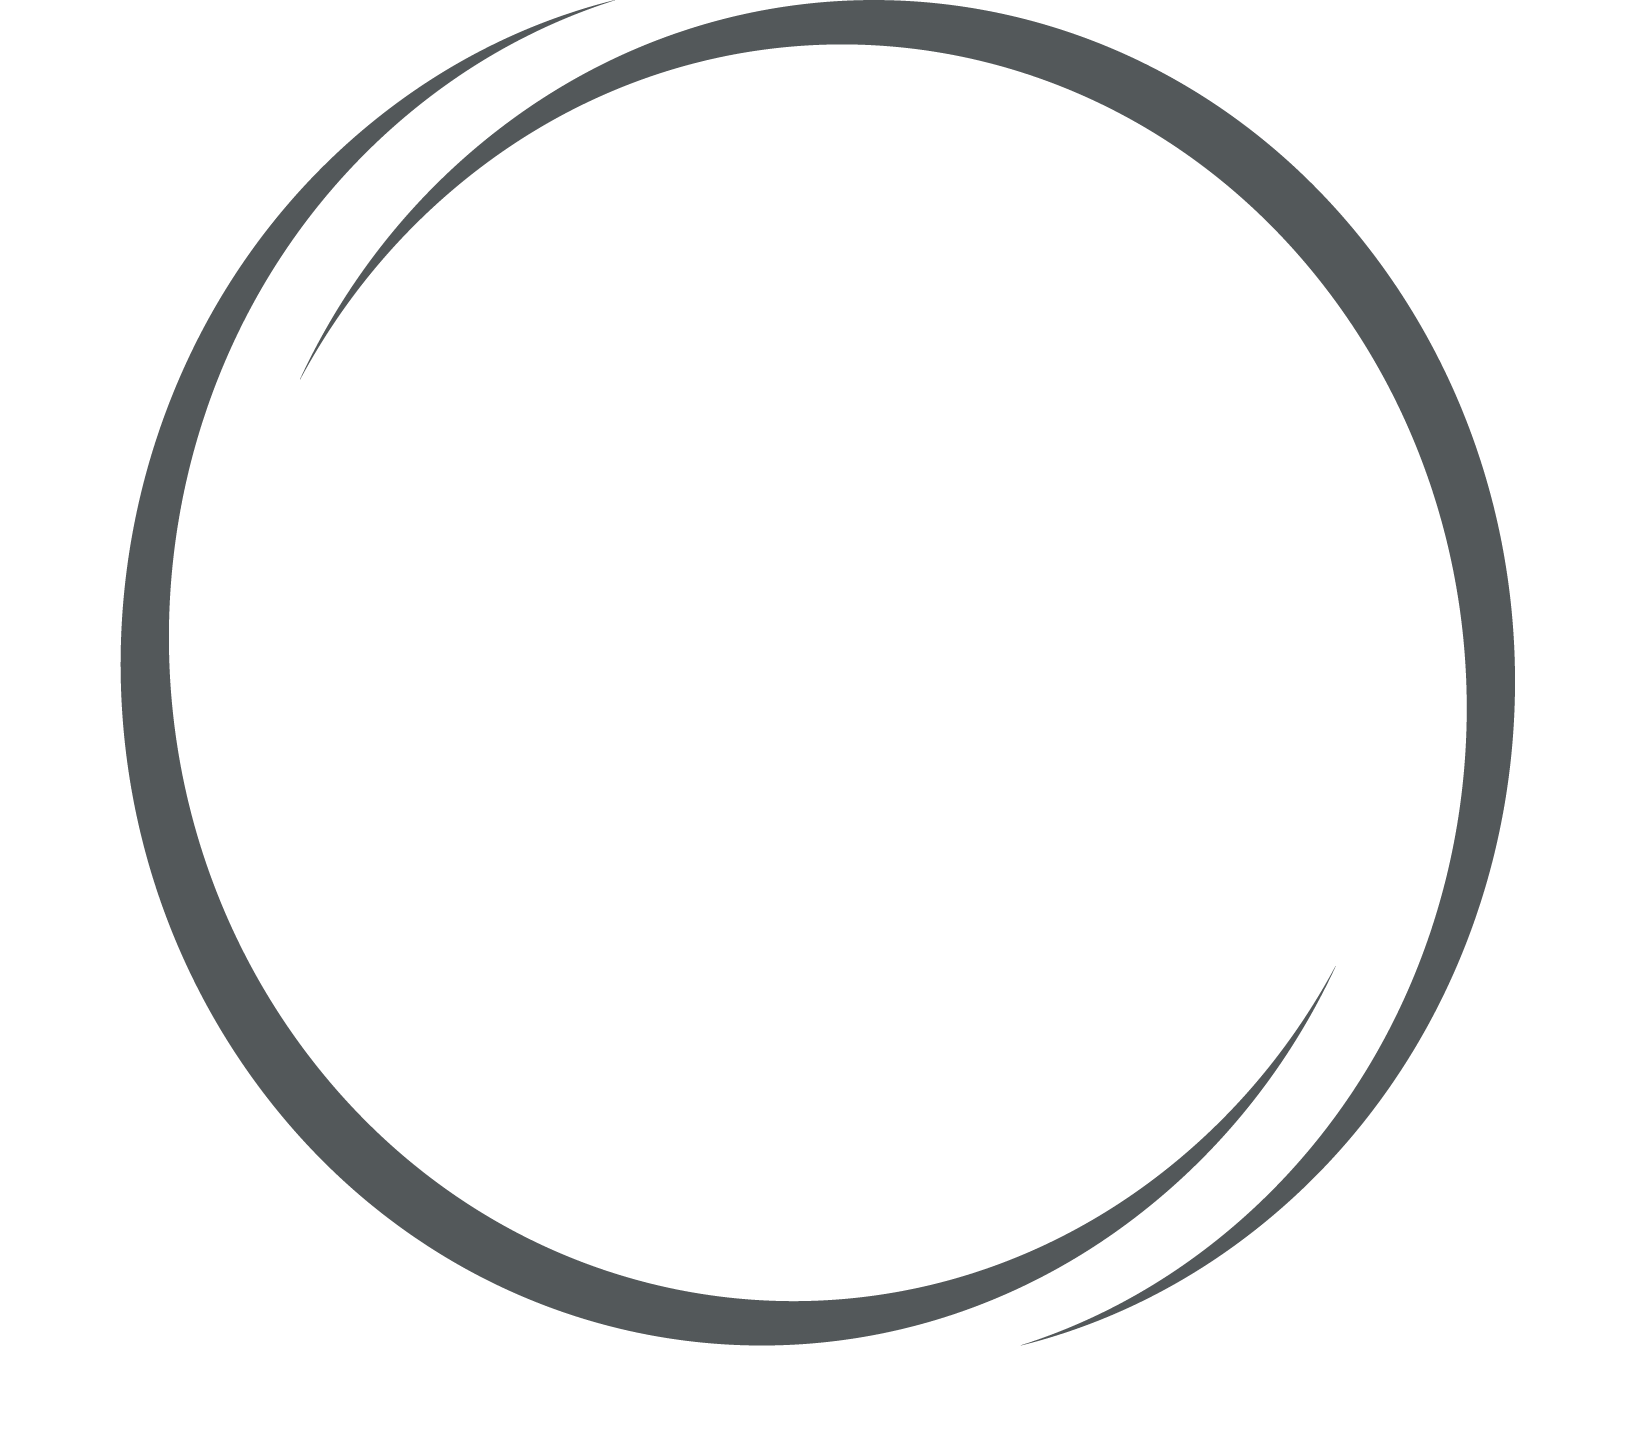 Линия в круге 5. Окружность для логотипа. Рамка круглая тонкая. Круг с линиями. Круг для эмблемы.